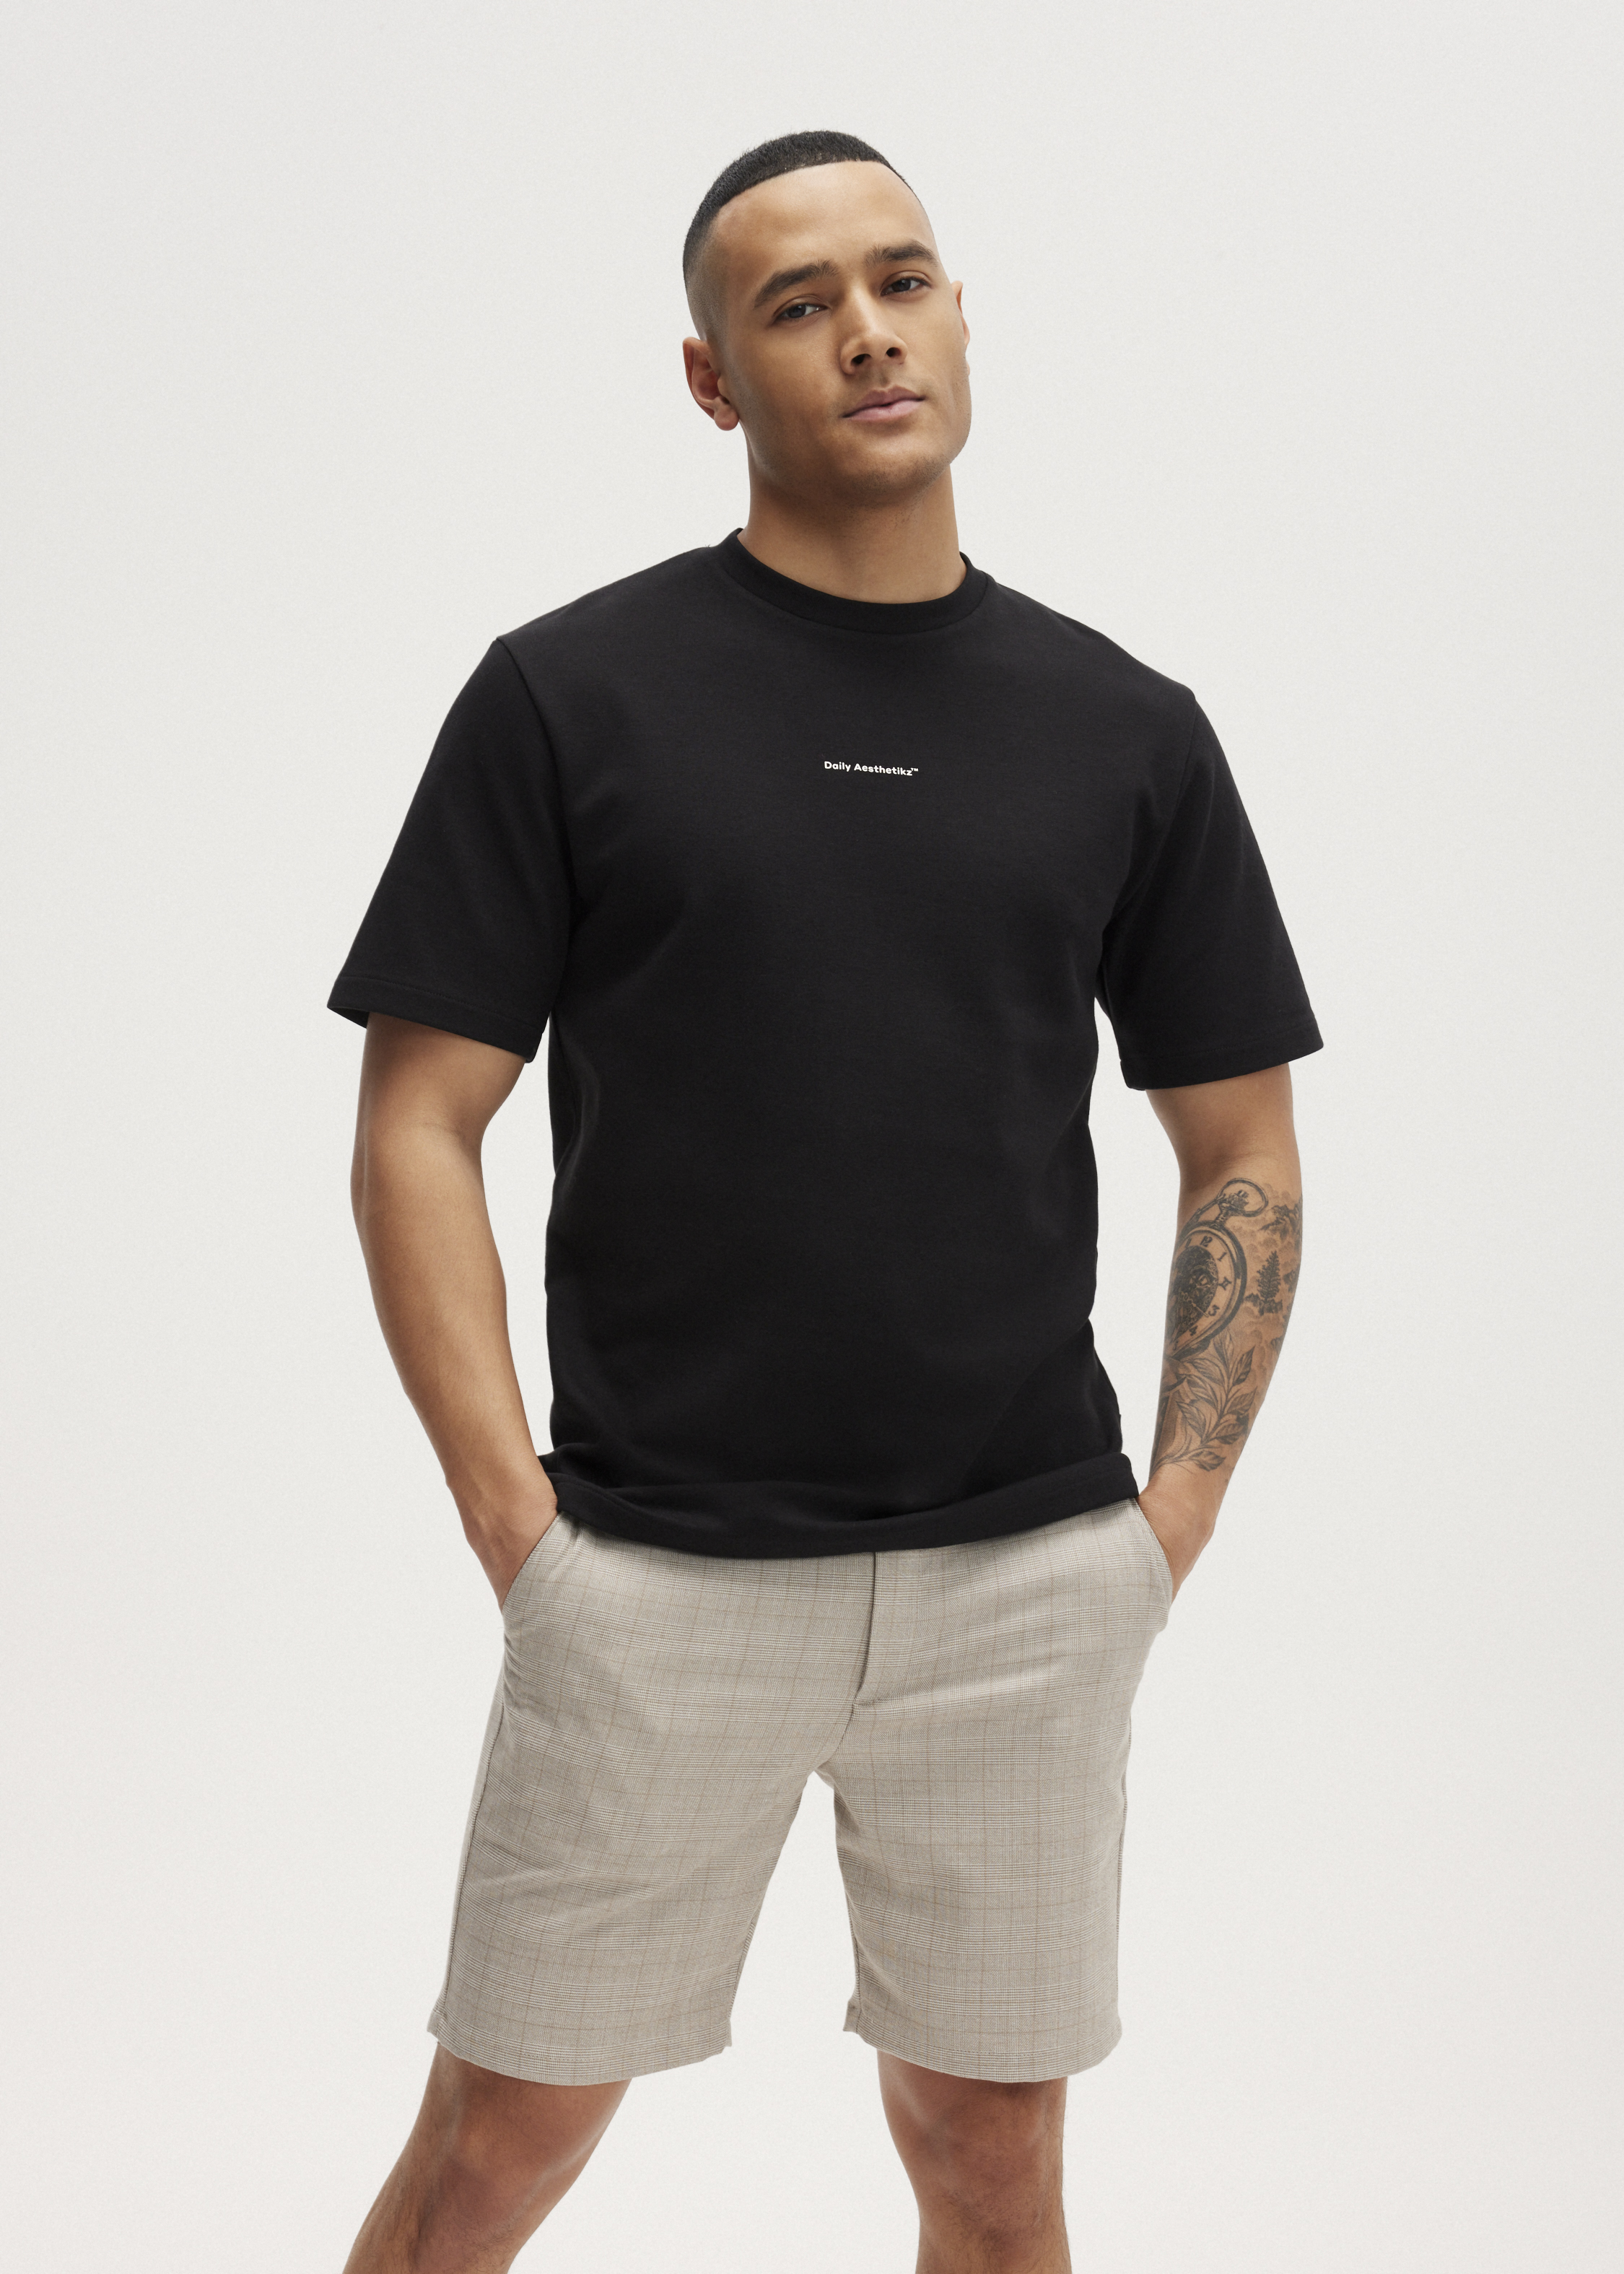 Idioot Beschrijven capaciteit Daily Trademark T-shirt zwart (ZWART) | The Sting